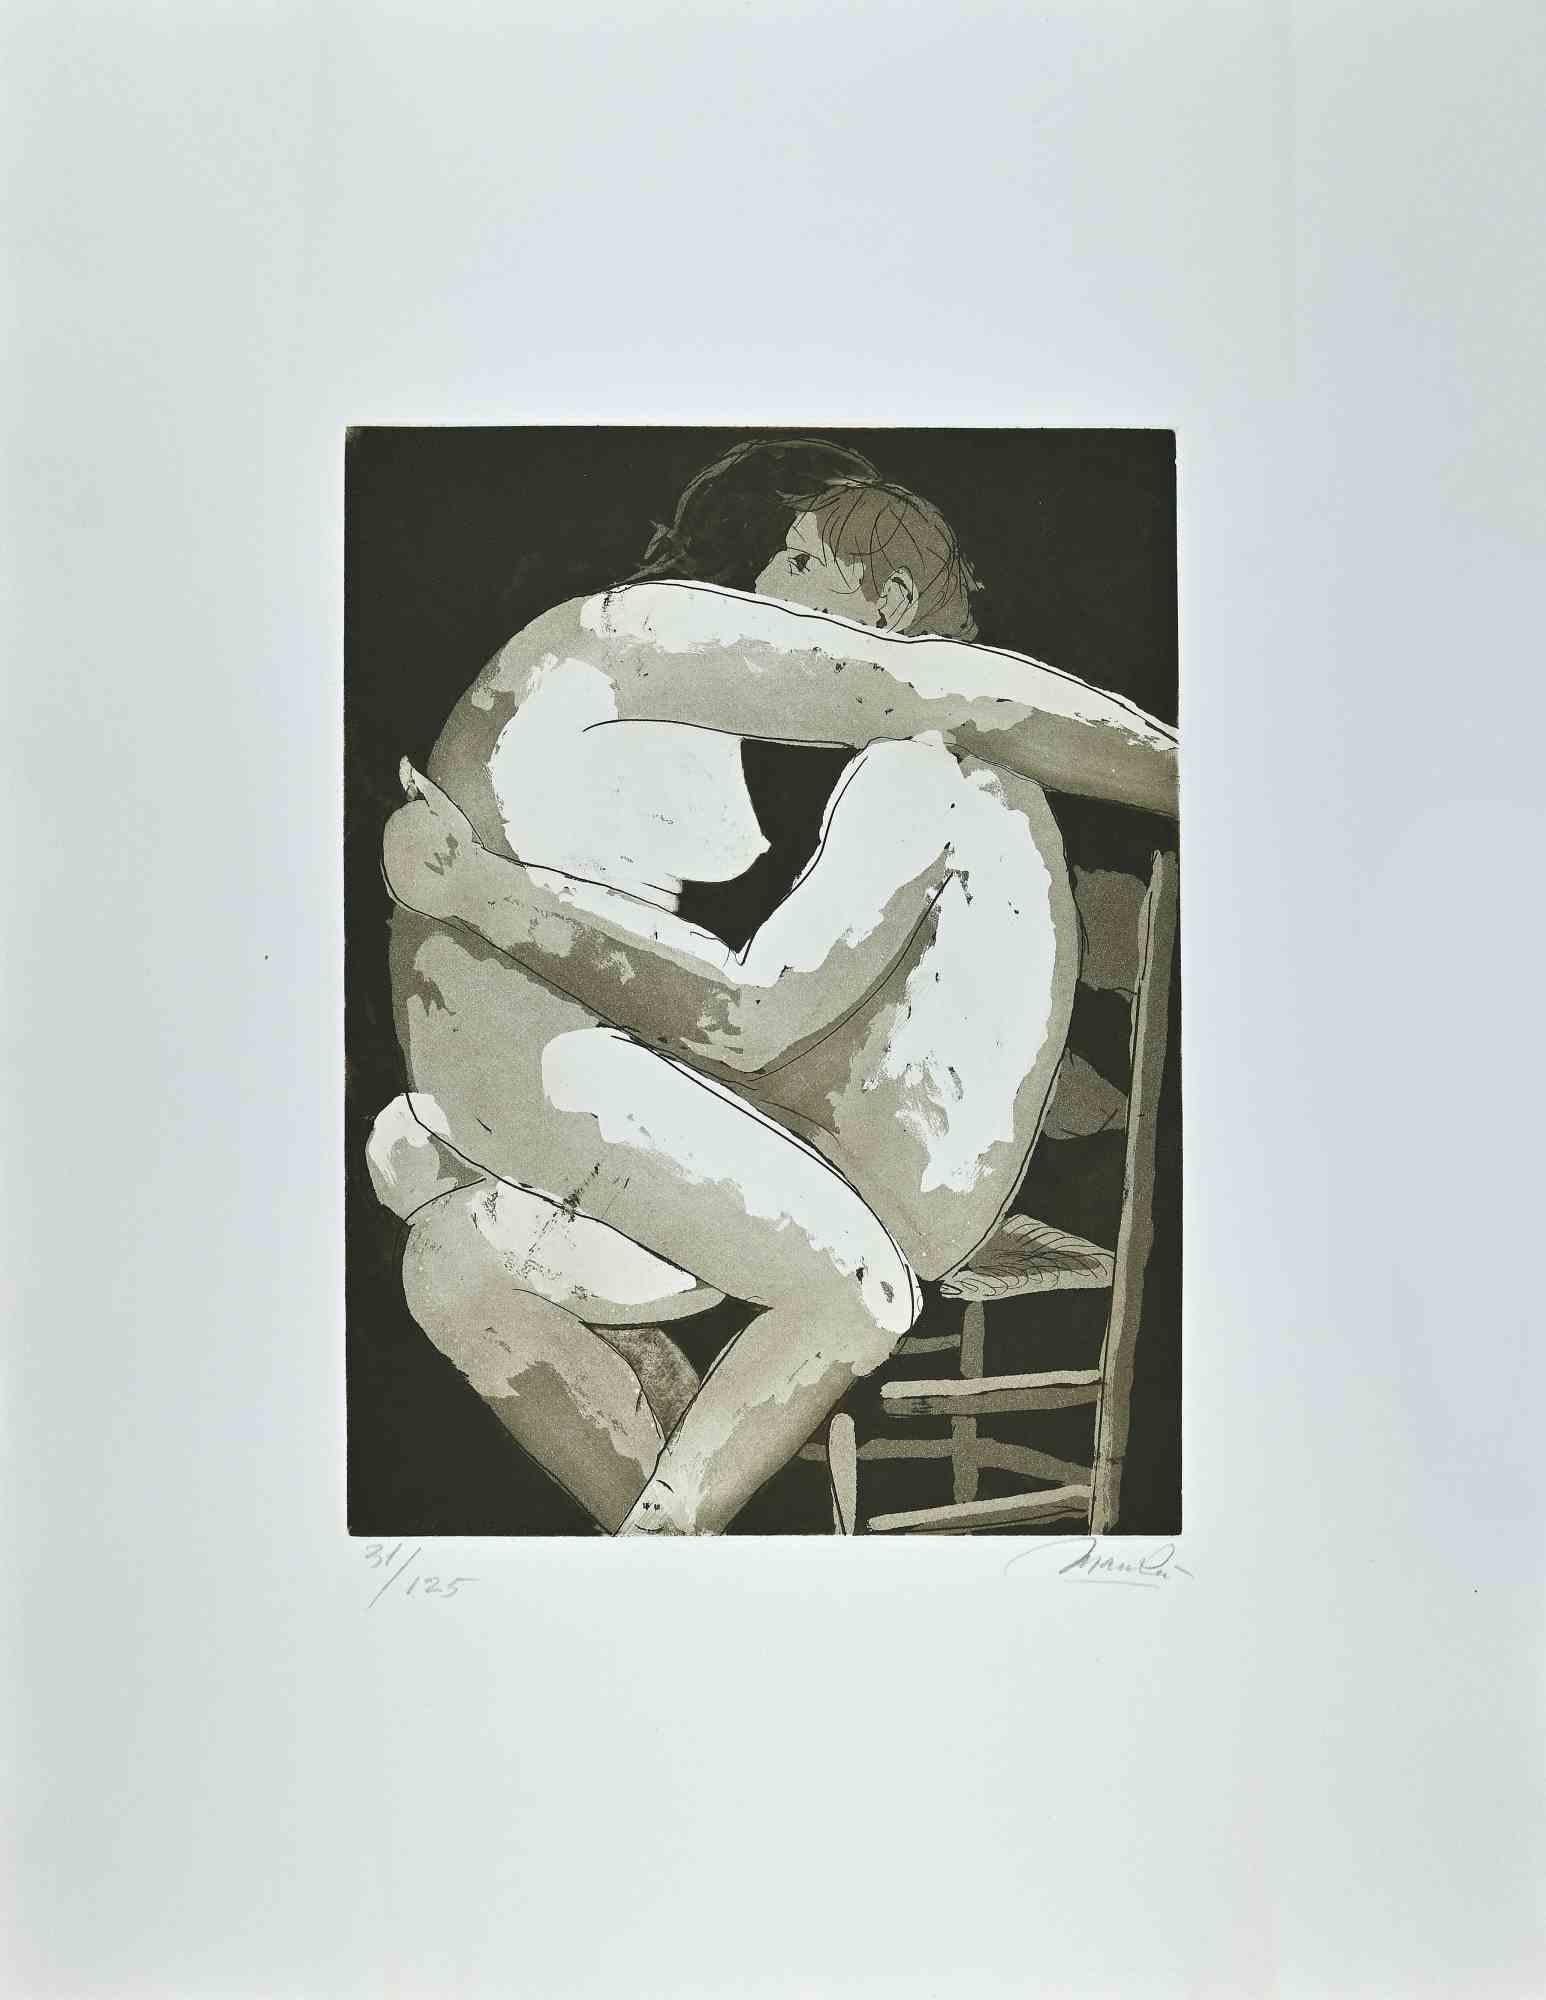 Giacomo Manzú Portrait Print - Lovers I  - Etching by Giacomo Manzù - 1970